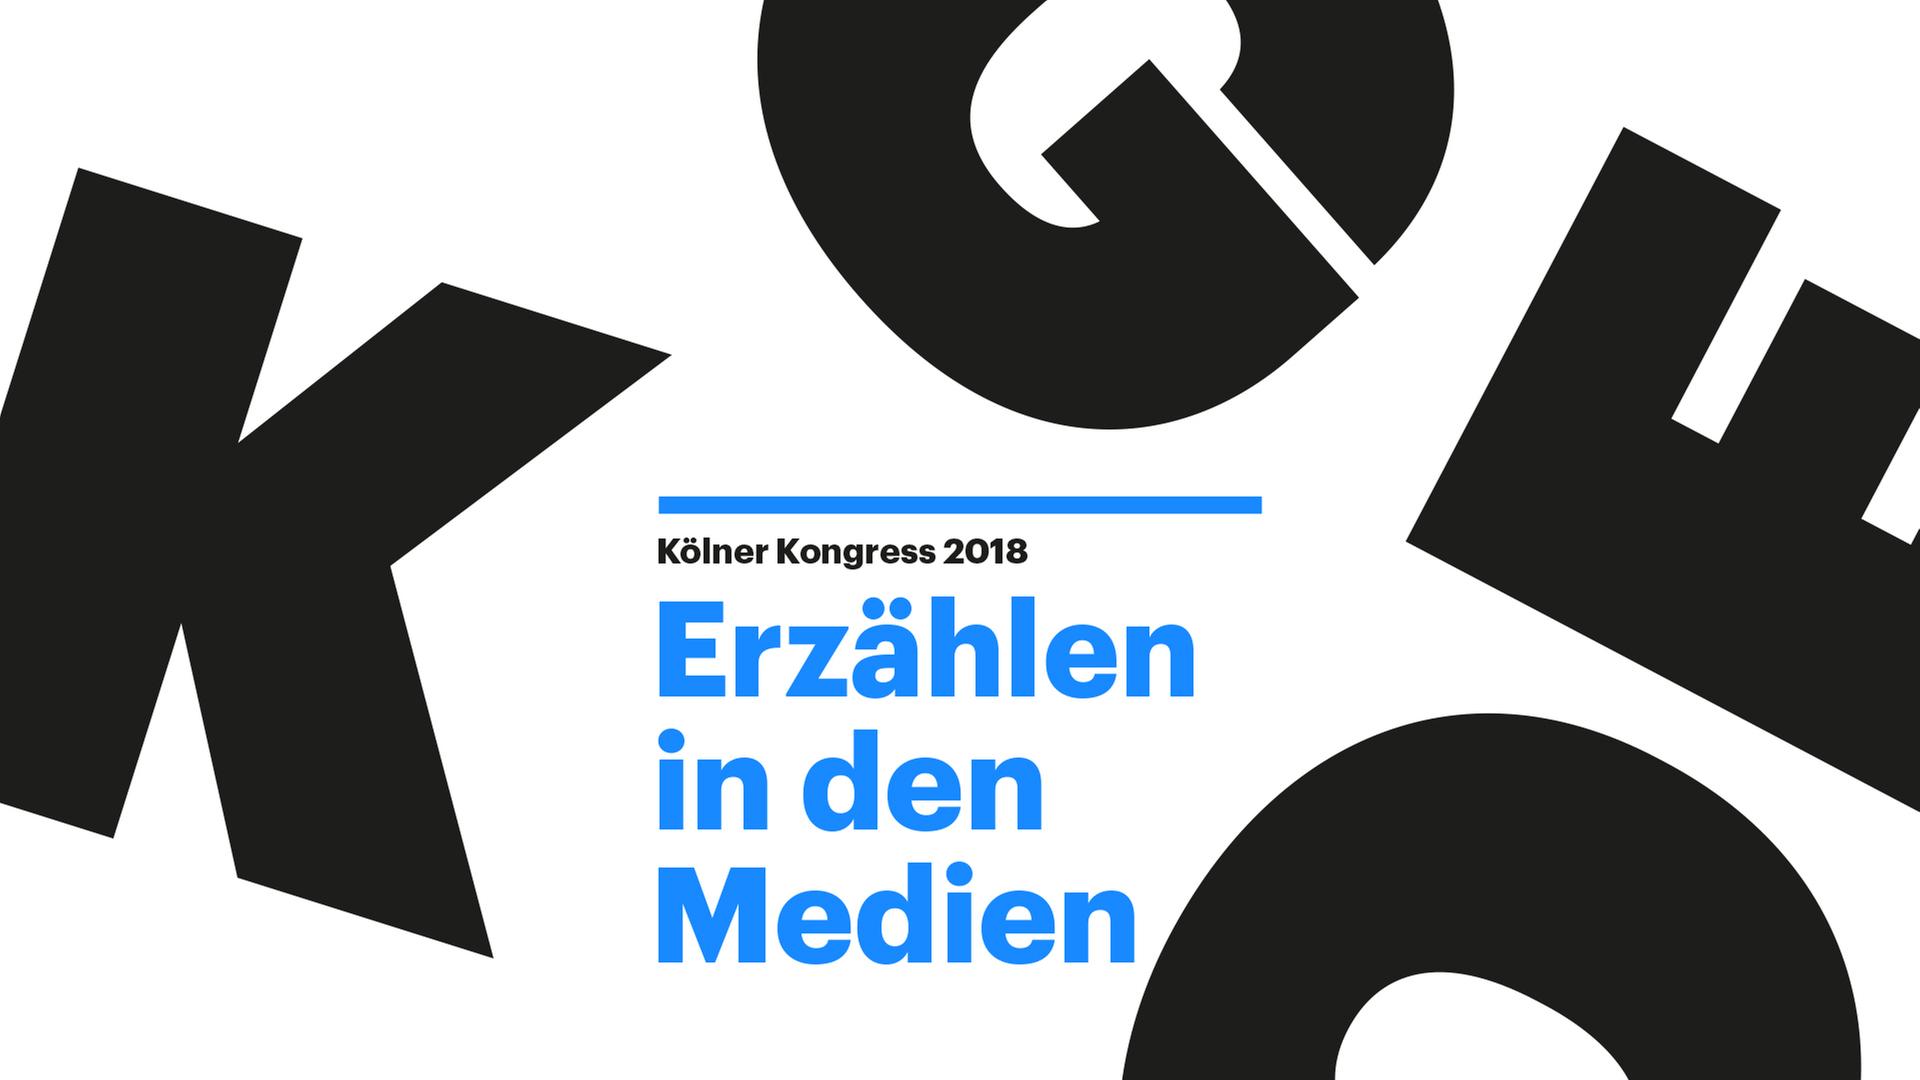 Kölner Kongress 2018